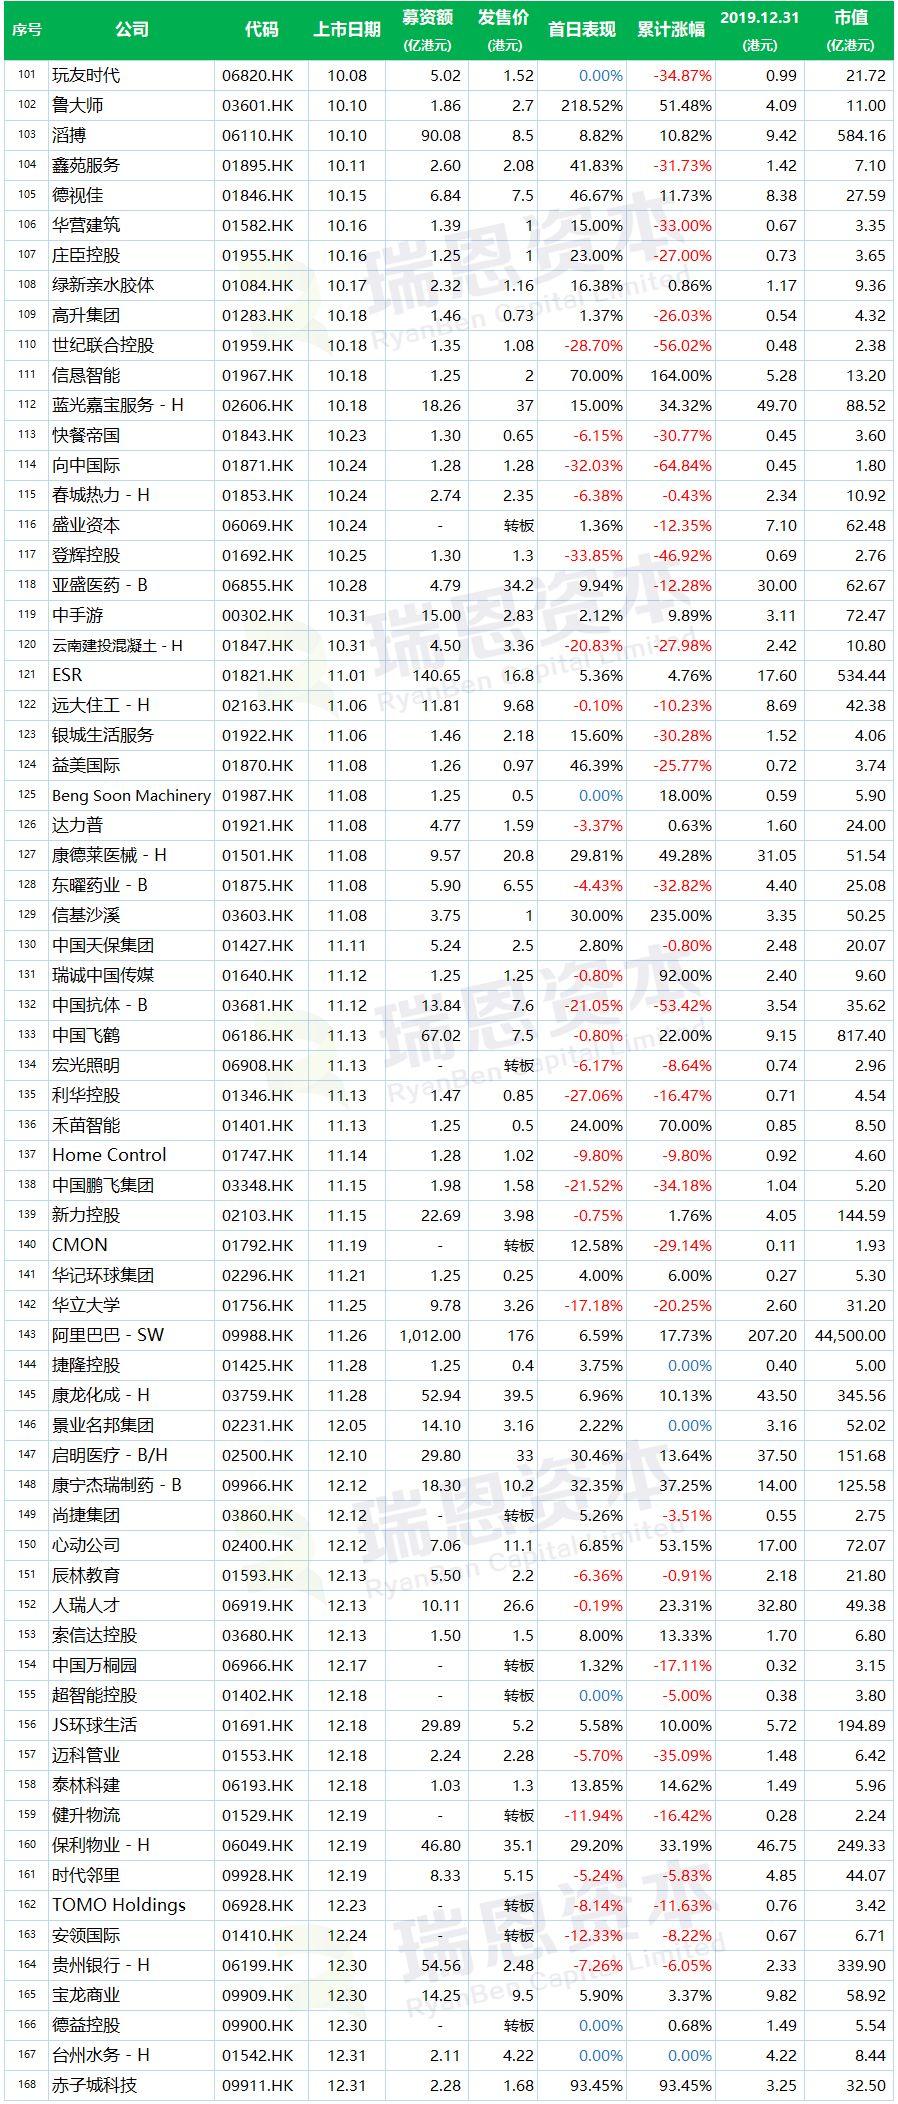 2019年香港新上市公司名單(183家)及其表現盤點